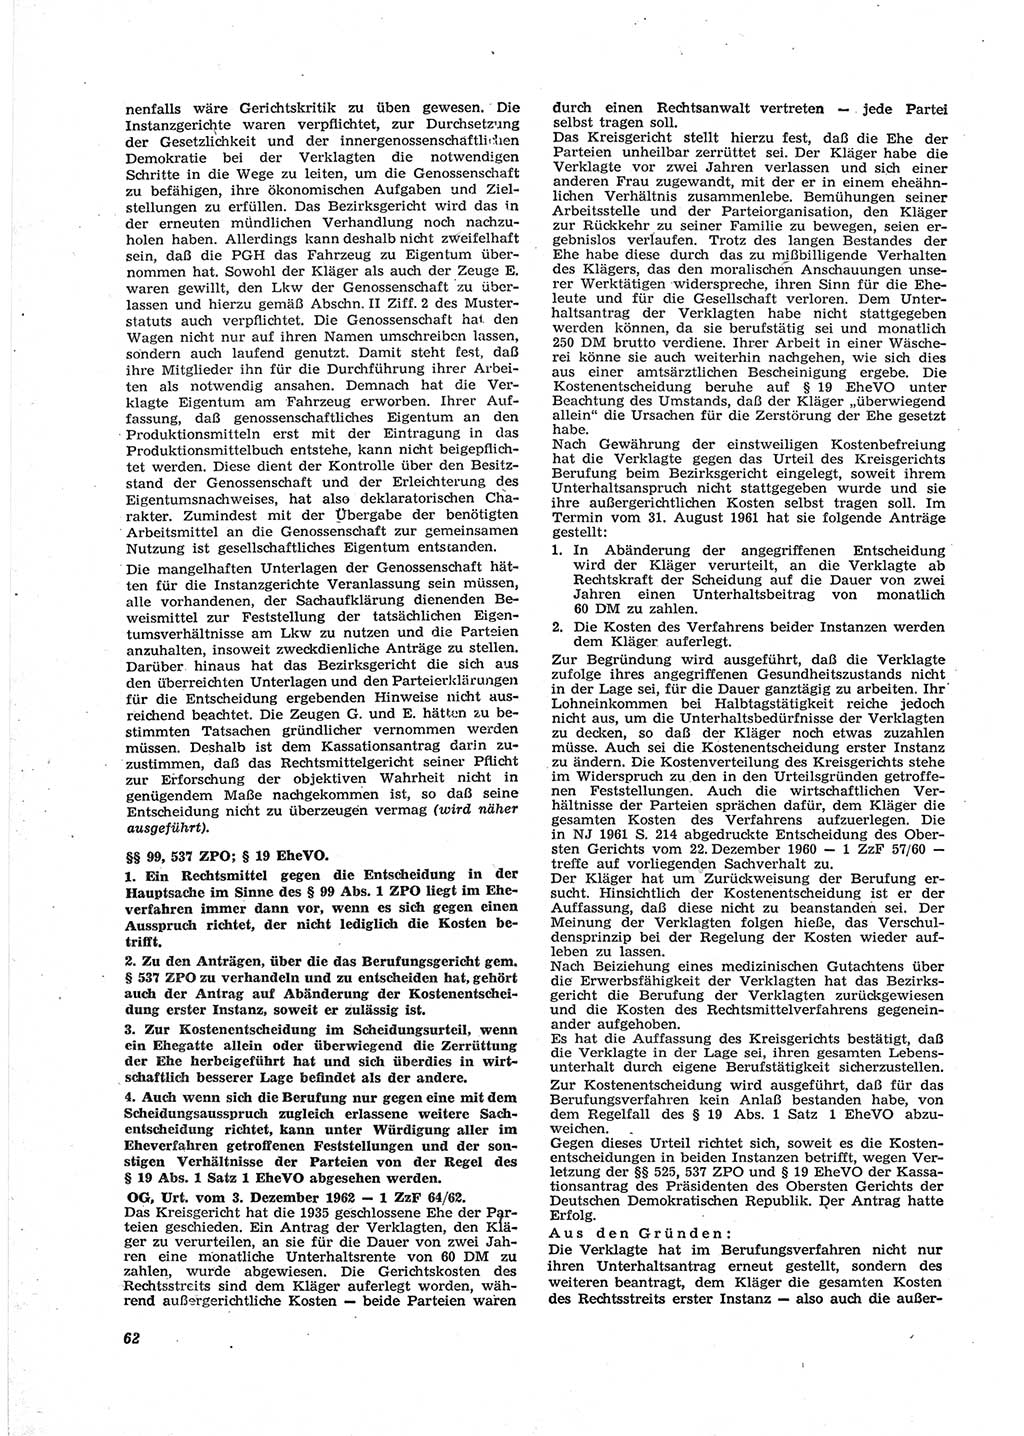 Neue Justiz (NJ), Zeitschrift für Recht und Rechtswissenschaft [Deutsche Demokratische Republik (DDR)], 18. Jahrgang 1964, Seite 62 (NJ DDR 1964, S. 62)